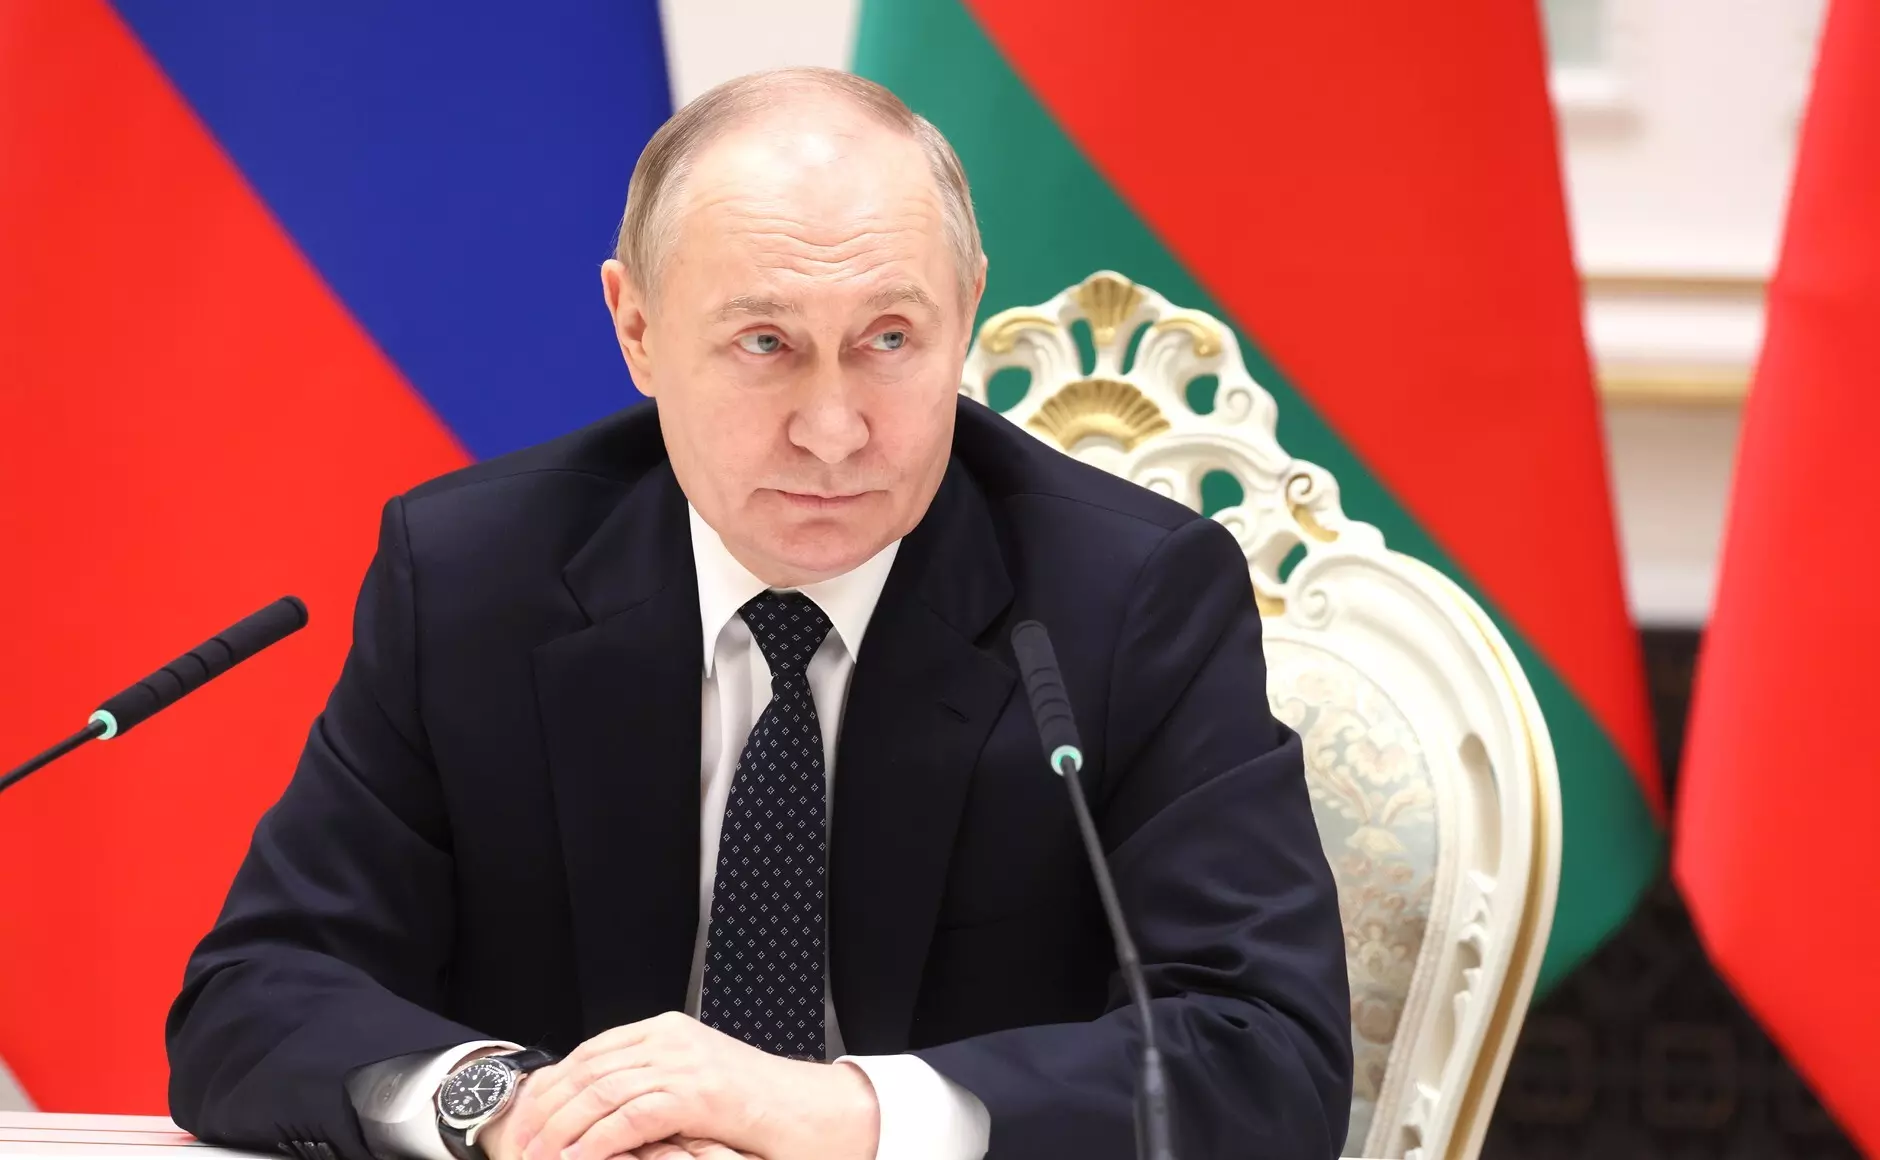 El presidente ruso, Vladimir Putin, durante su visita a Bielorrusia. — Kremlin / dpa / Europa Press